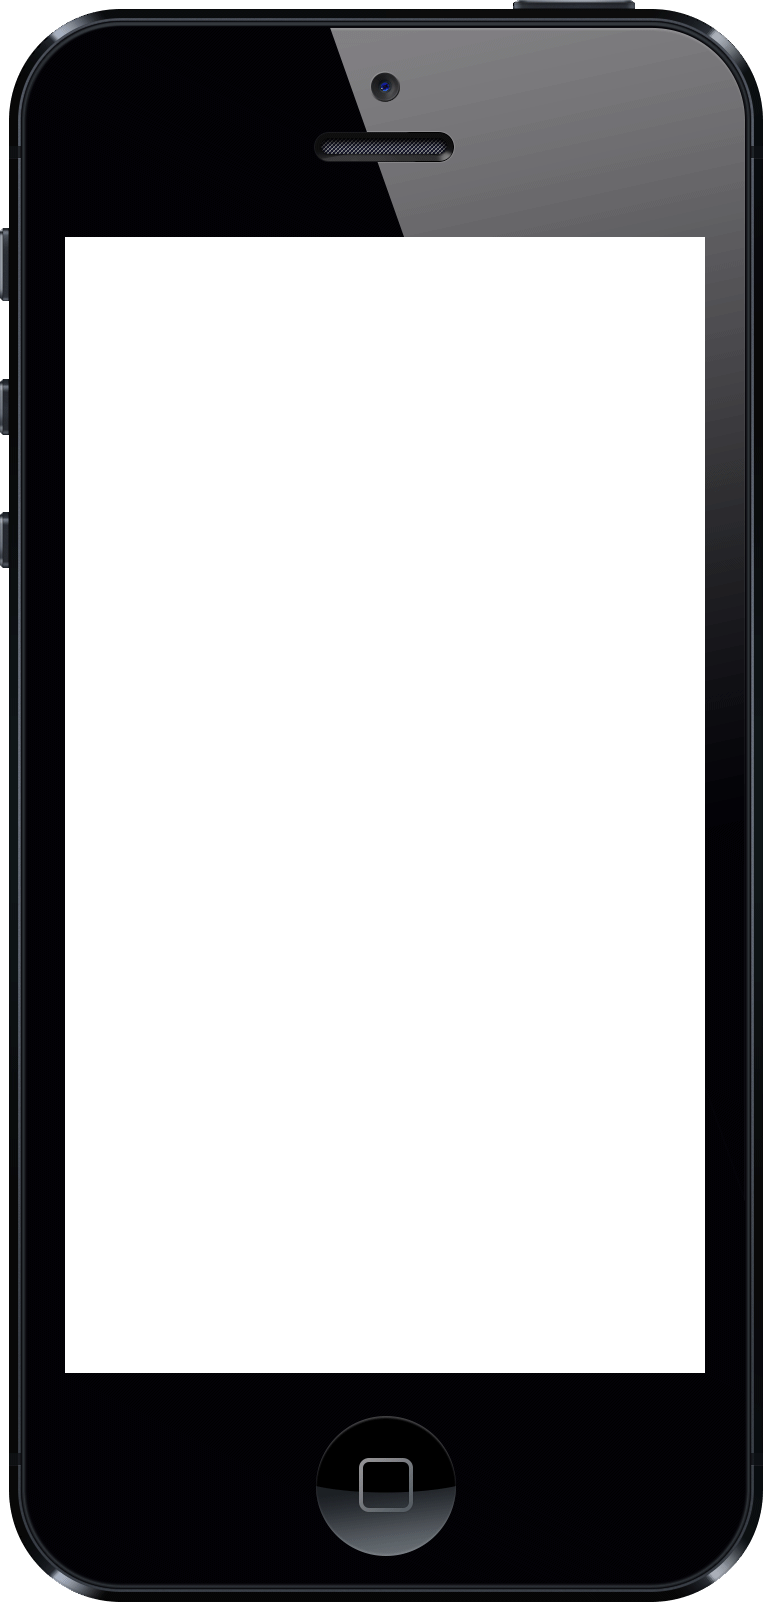 iPhone Blank Screen